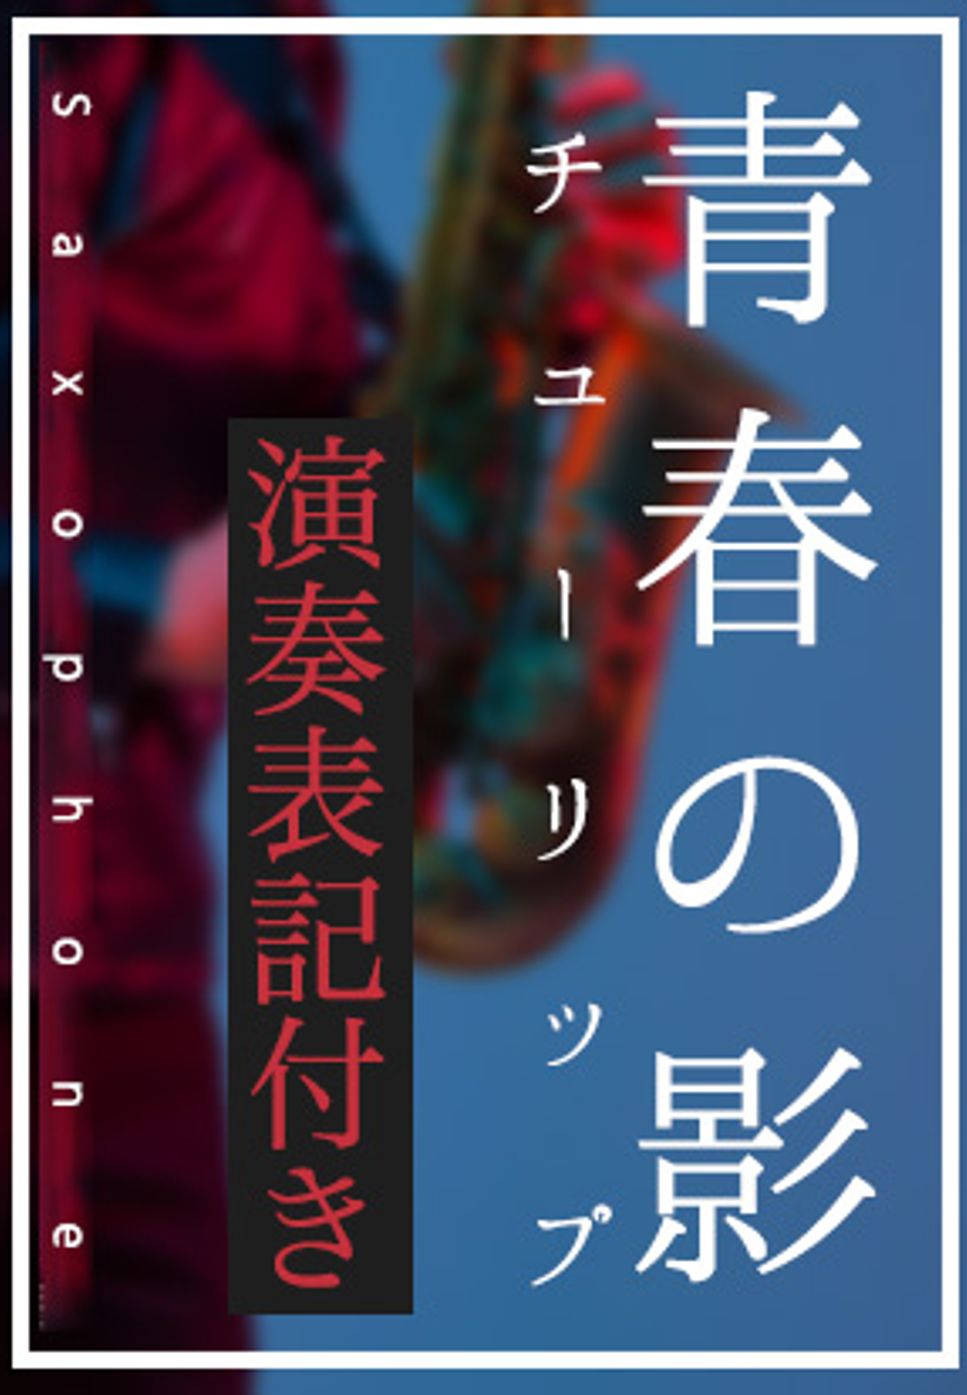 チューリップ - 青春の影(in B♭)演奏表記付き by 仲宗根隆